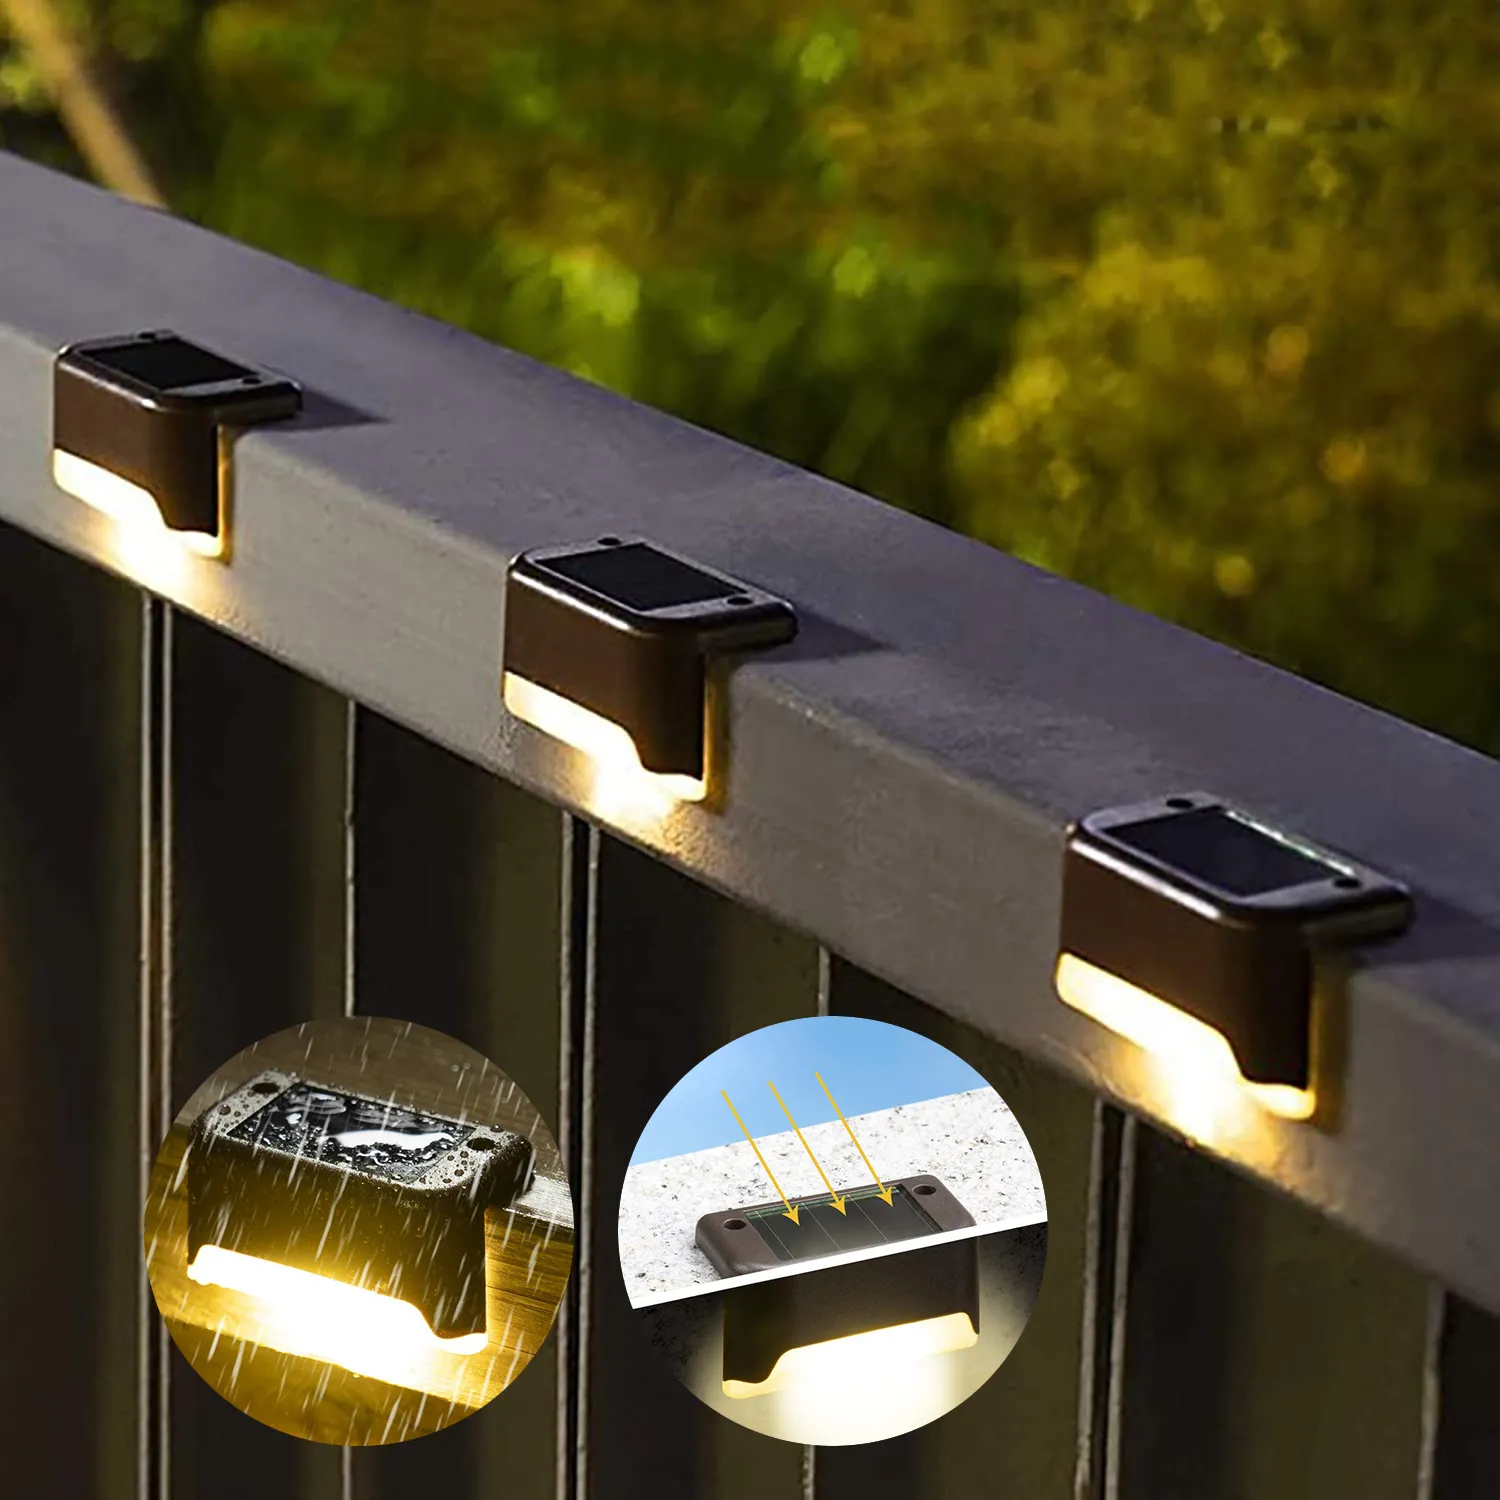 Lot de 4 lampes solaires pour terrasse, lampes solaires LED étanches pour balustrade, escalier, clôture, cour, patio et chemin D5.0